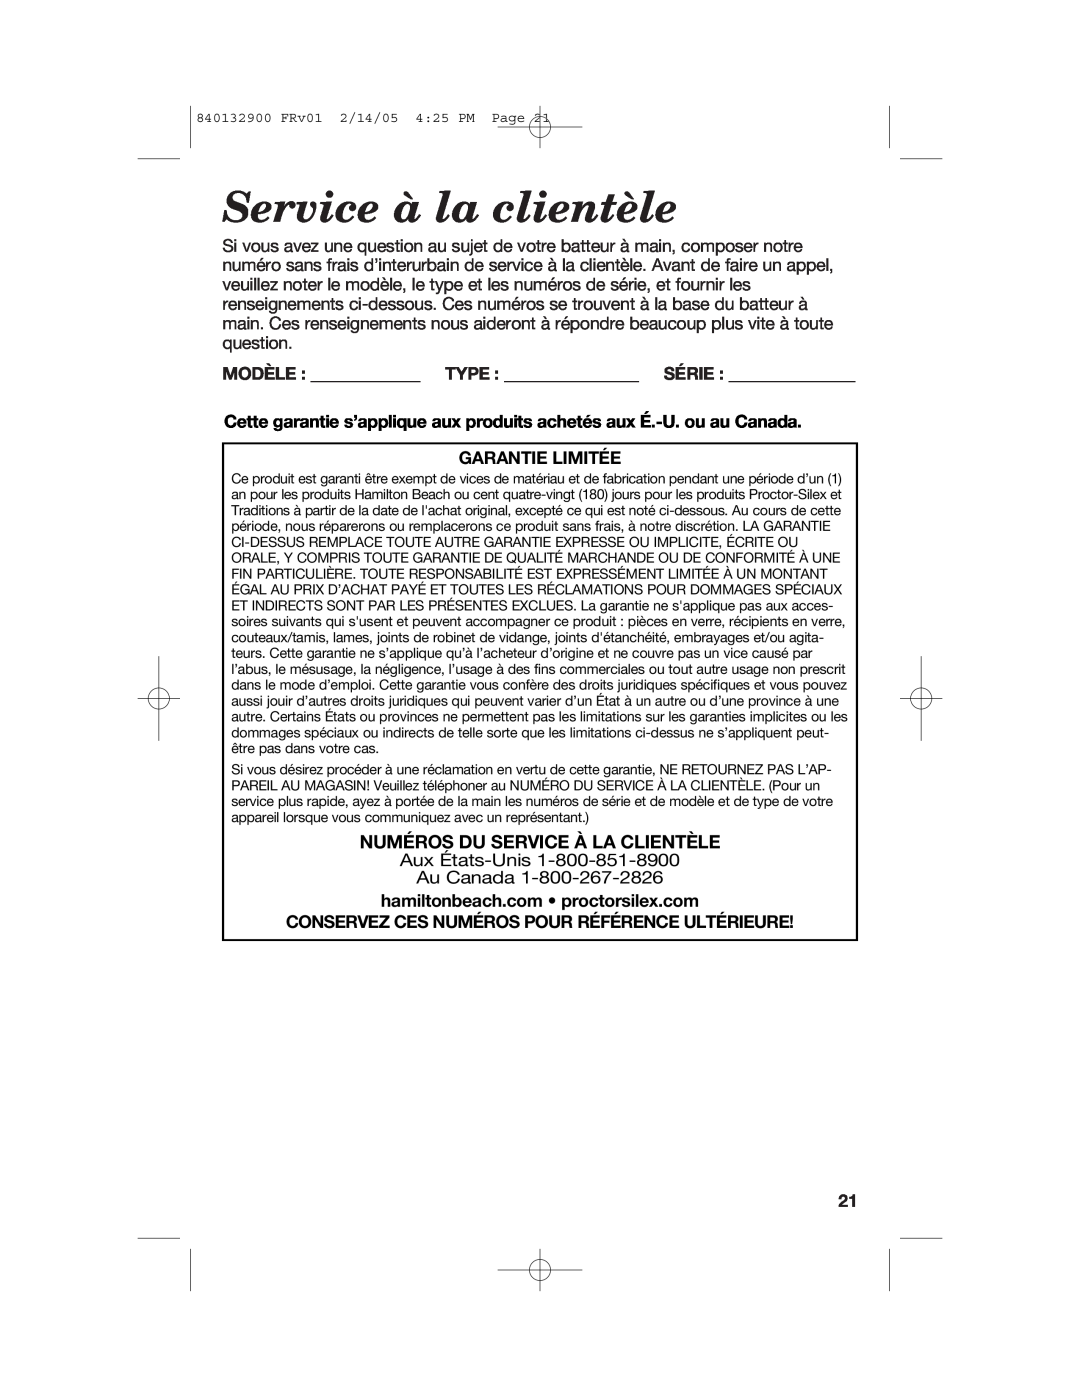 Hamilton Beach 840132900 manual Service à la clientèle, Numéros Du Service À La Clientèle 